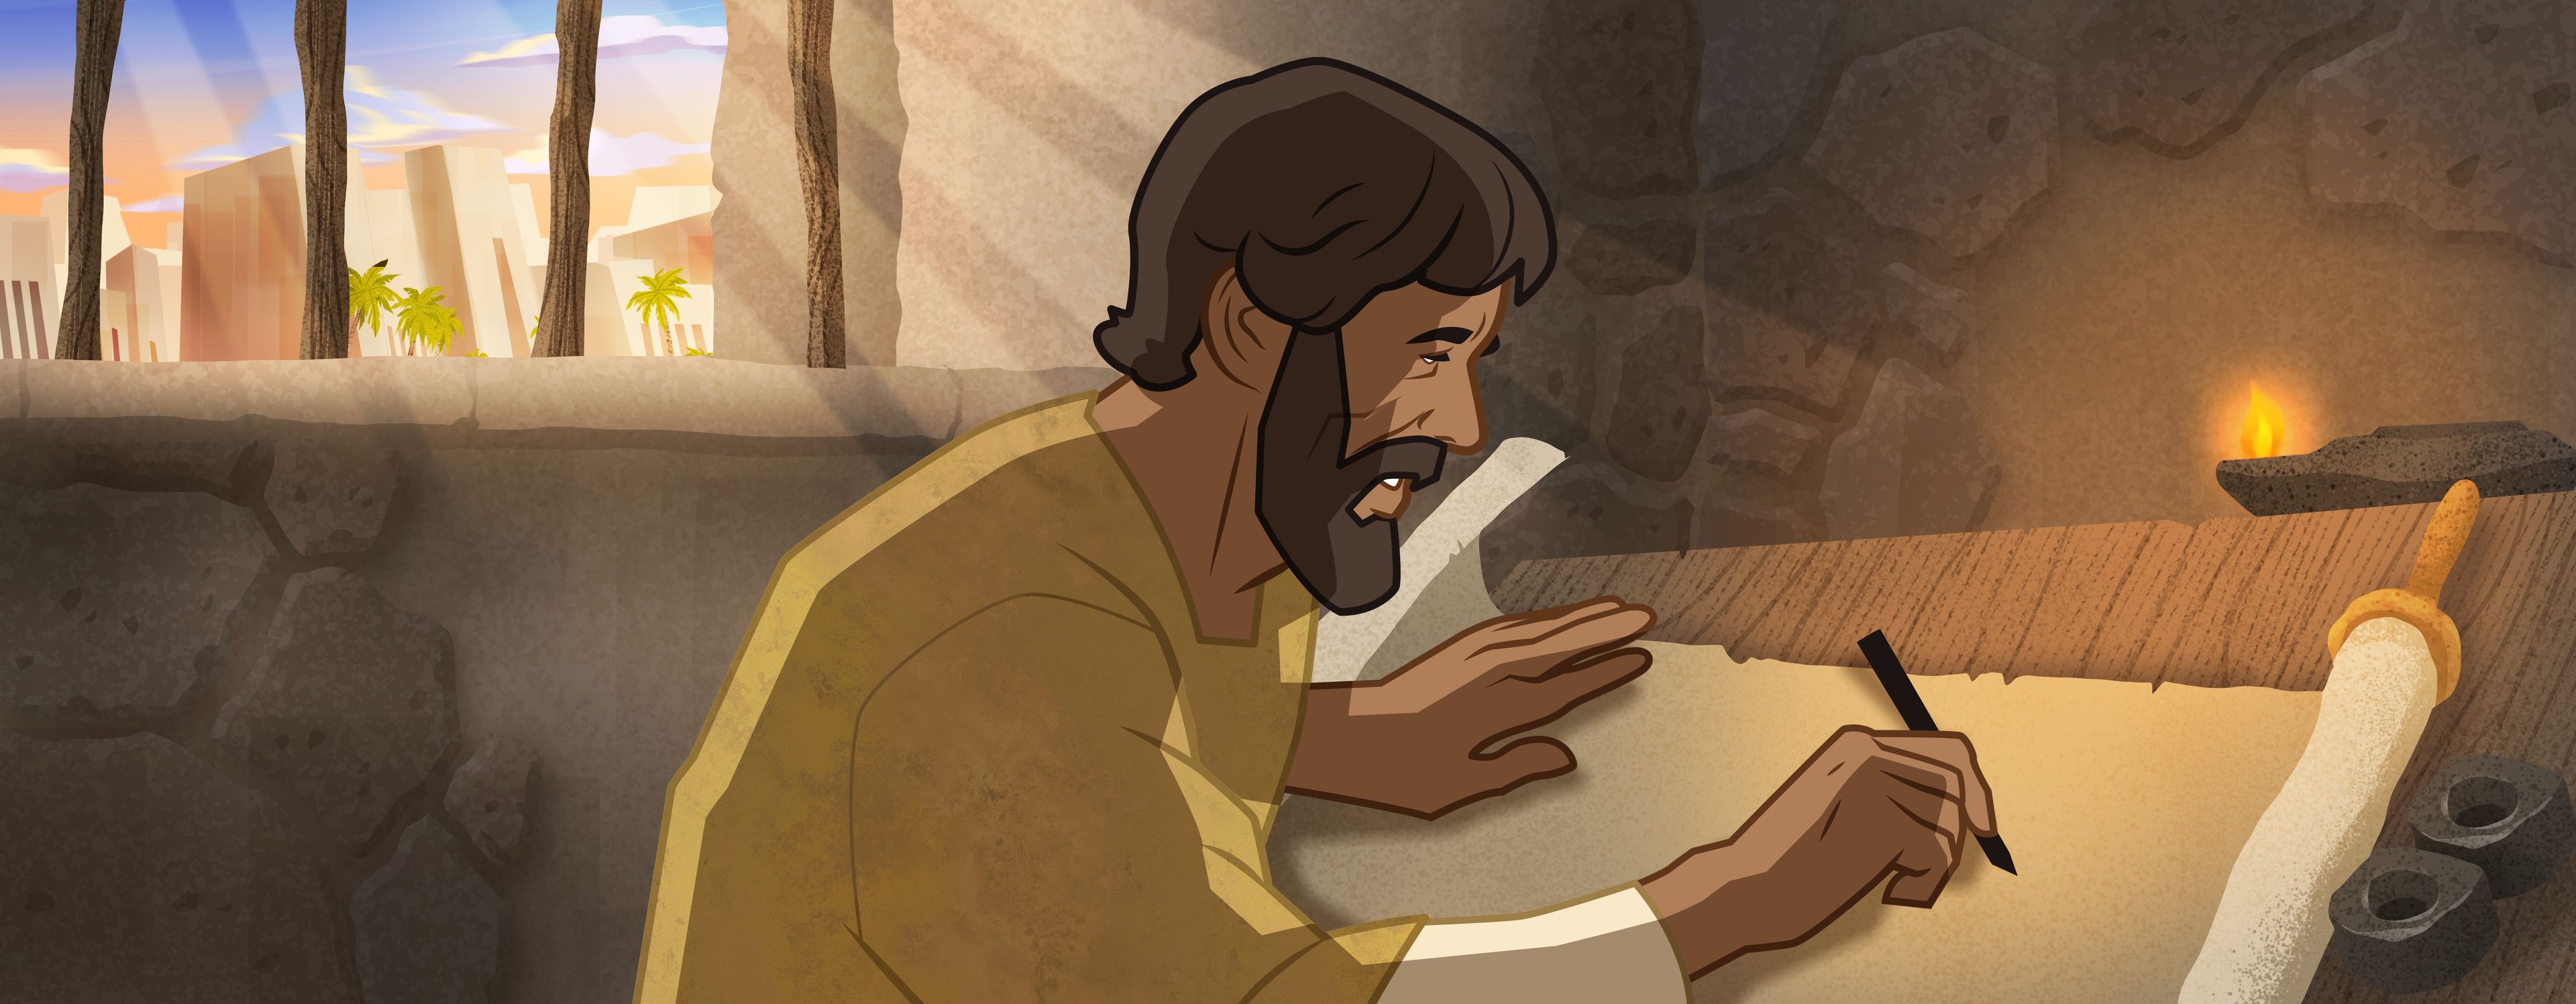 旧約聖書物語—預言者エレミヤ